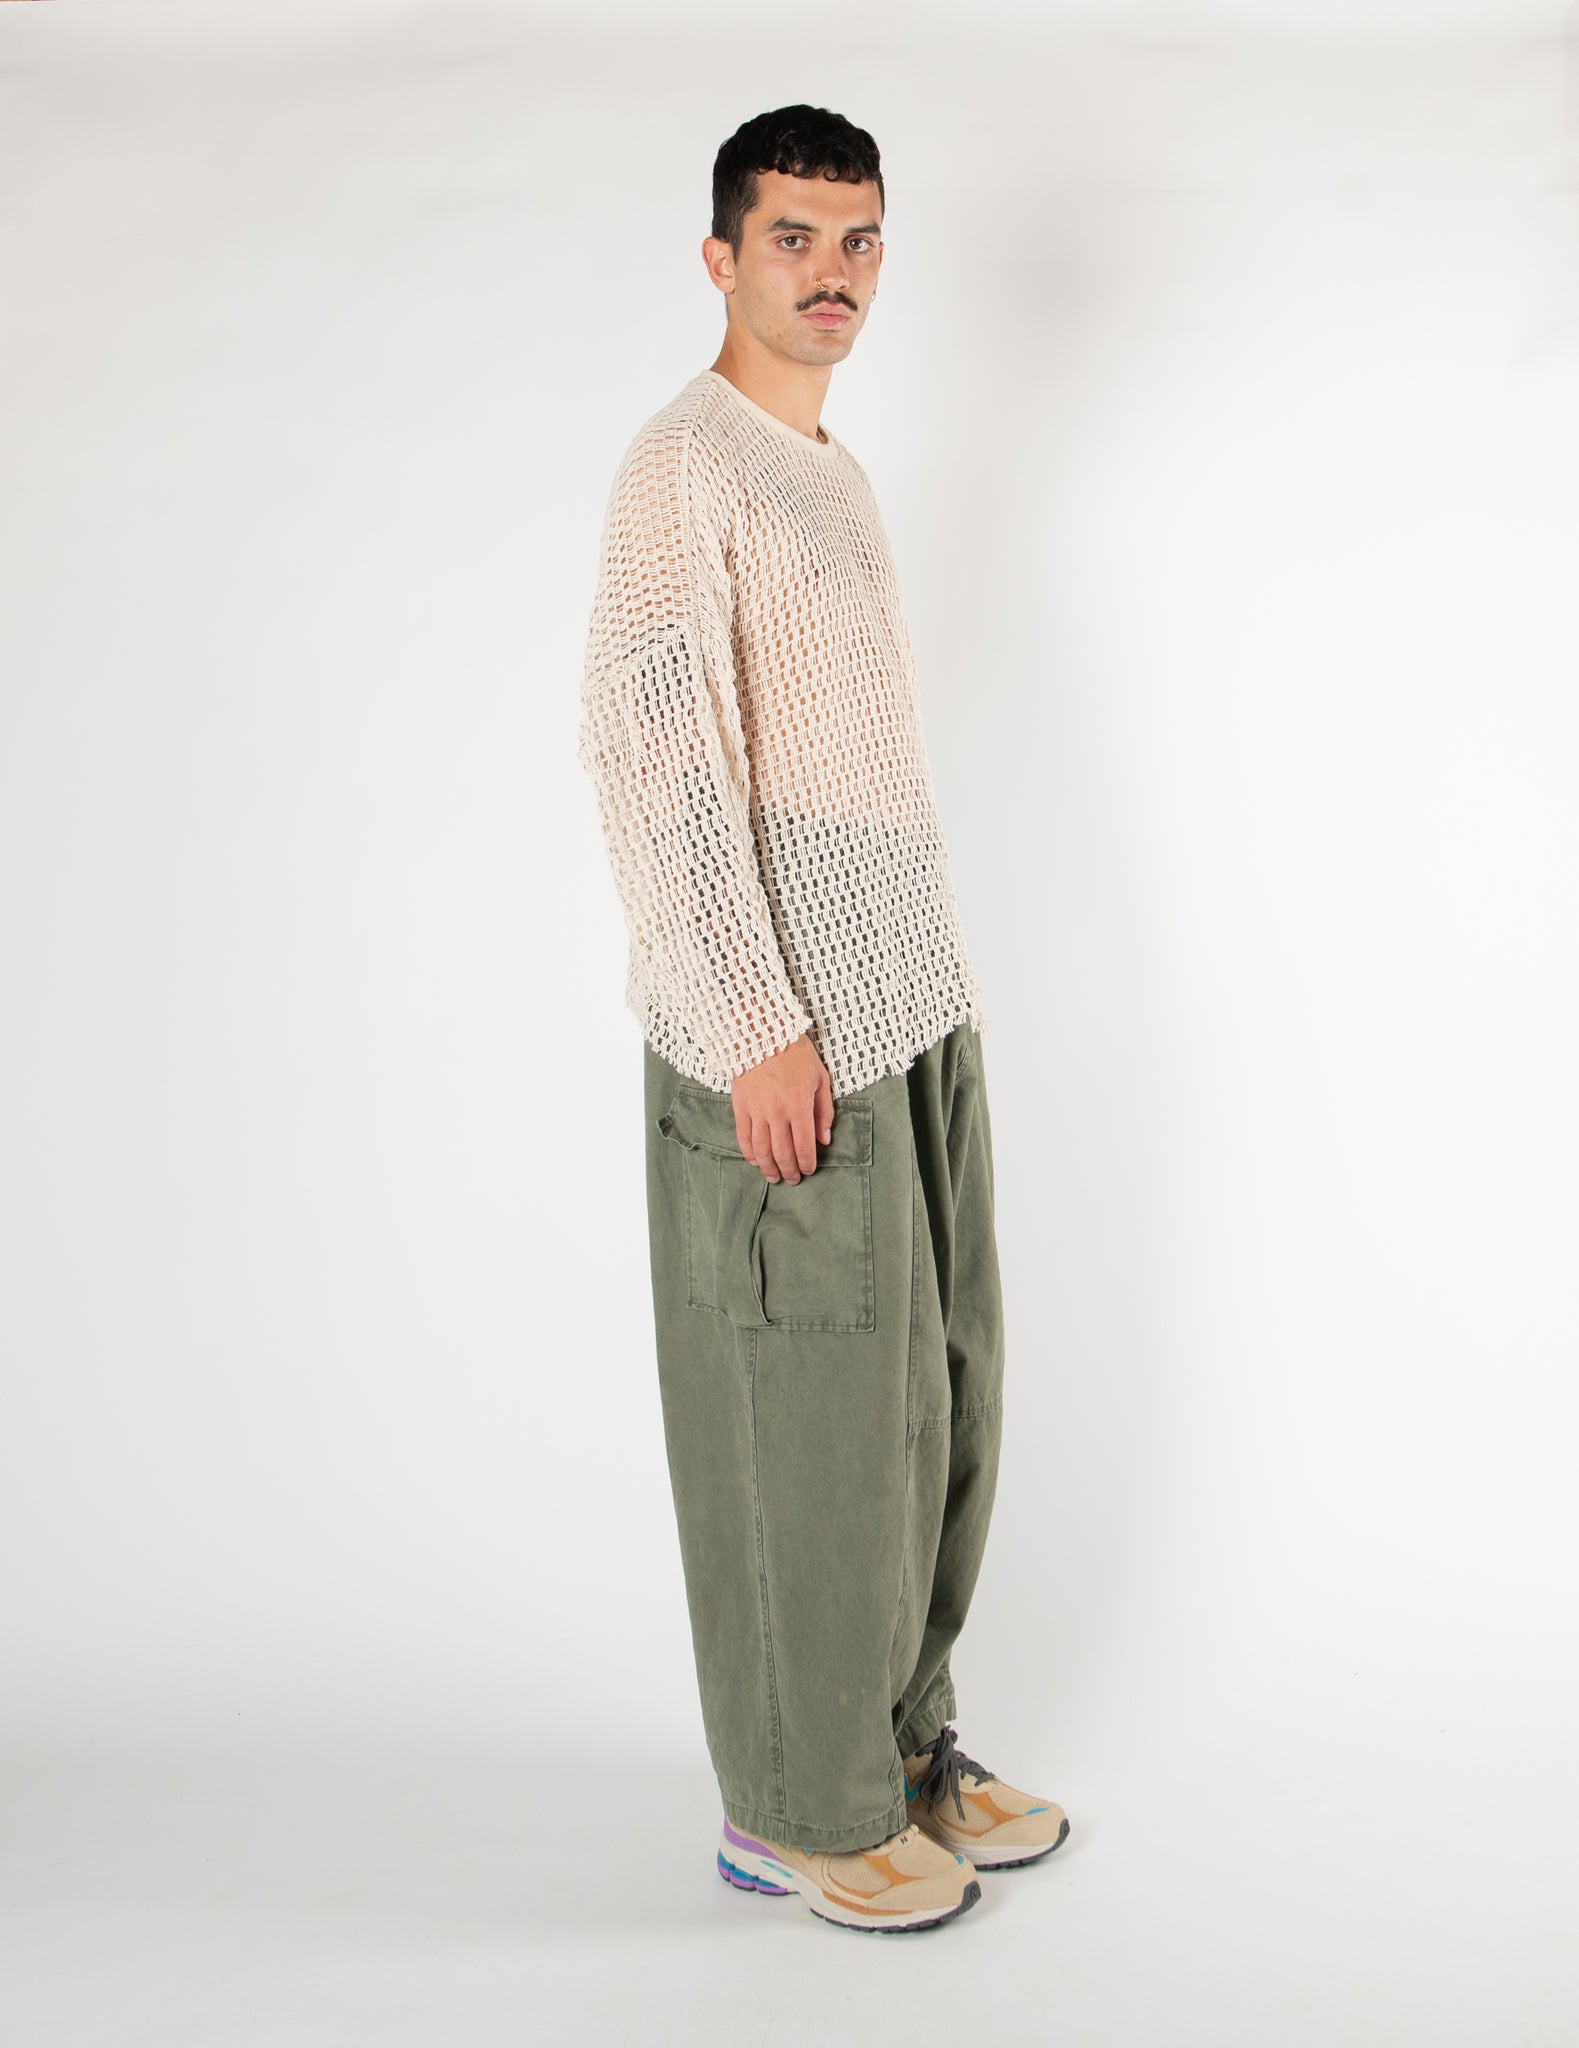 Mesh Knit Sweater